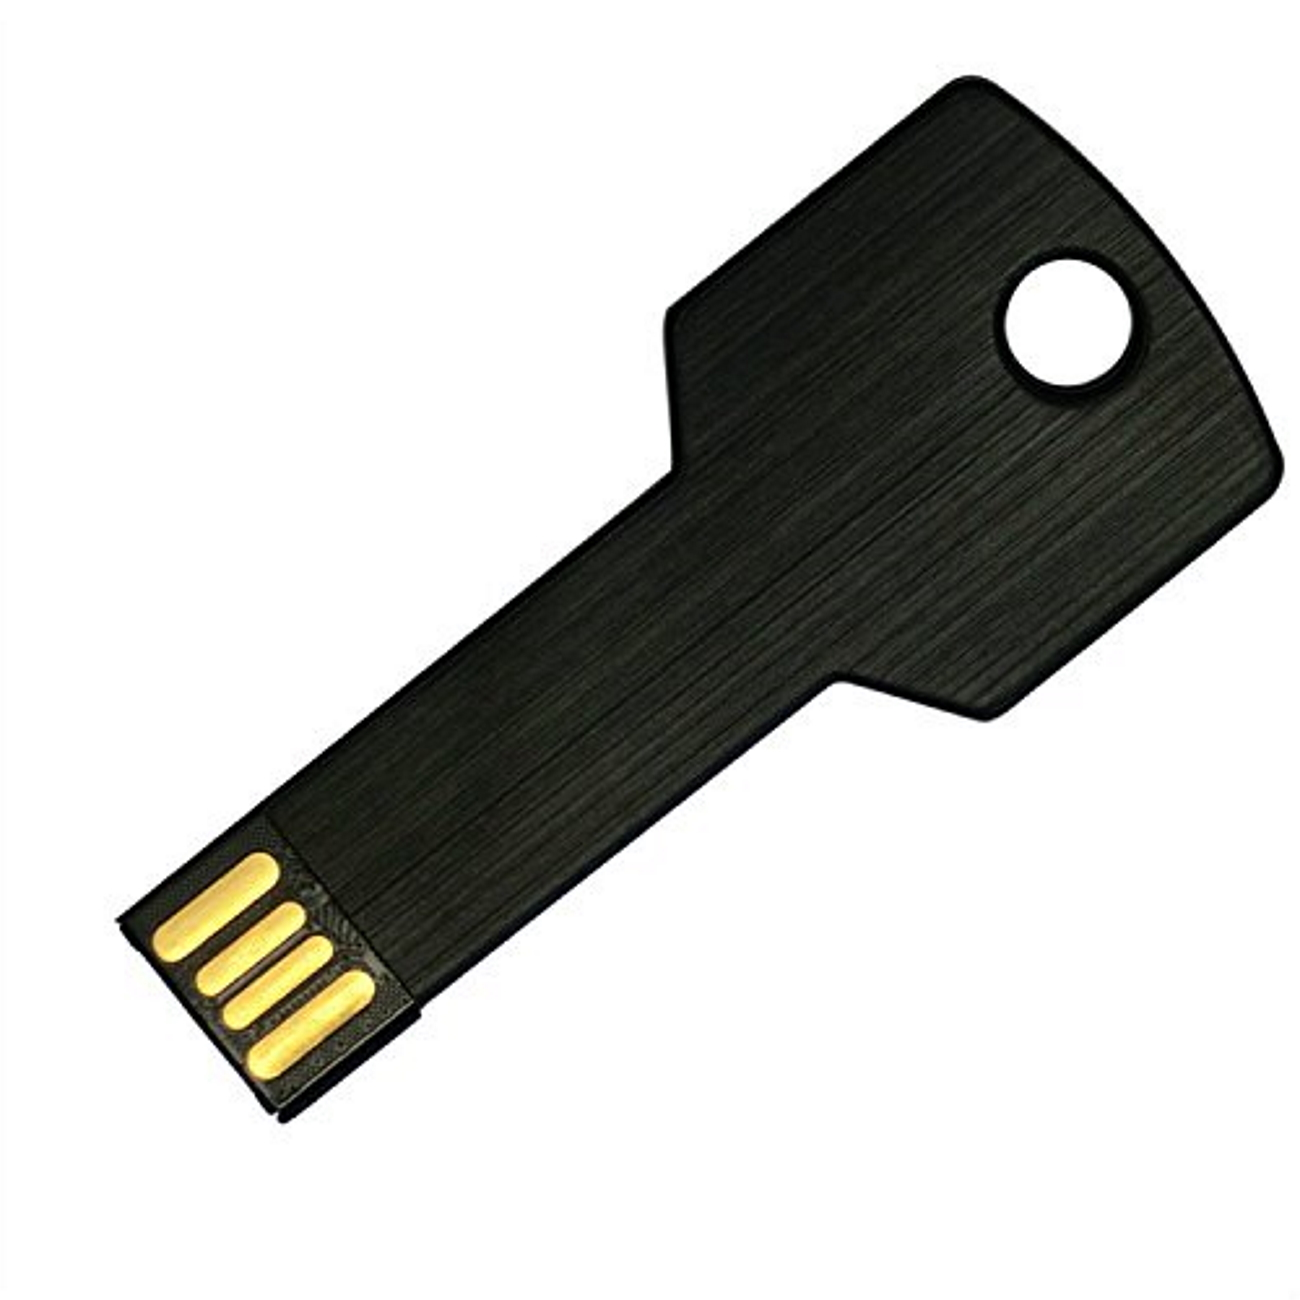 4GB Key USB USB-Stick 4 GB) Schwarz GERMANY (Schwarz,